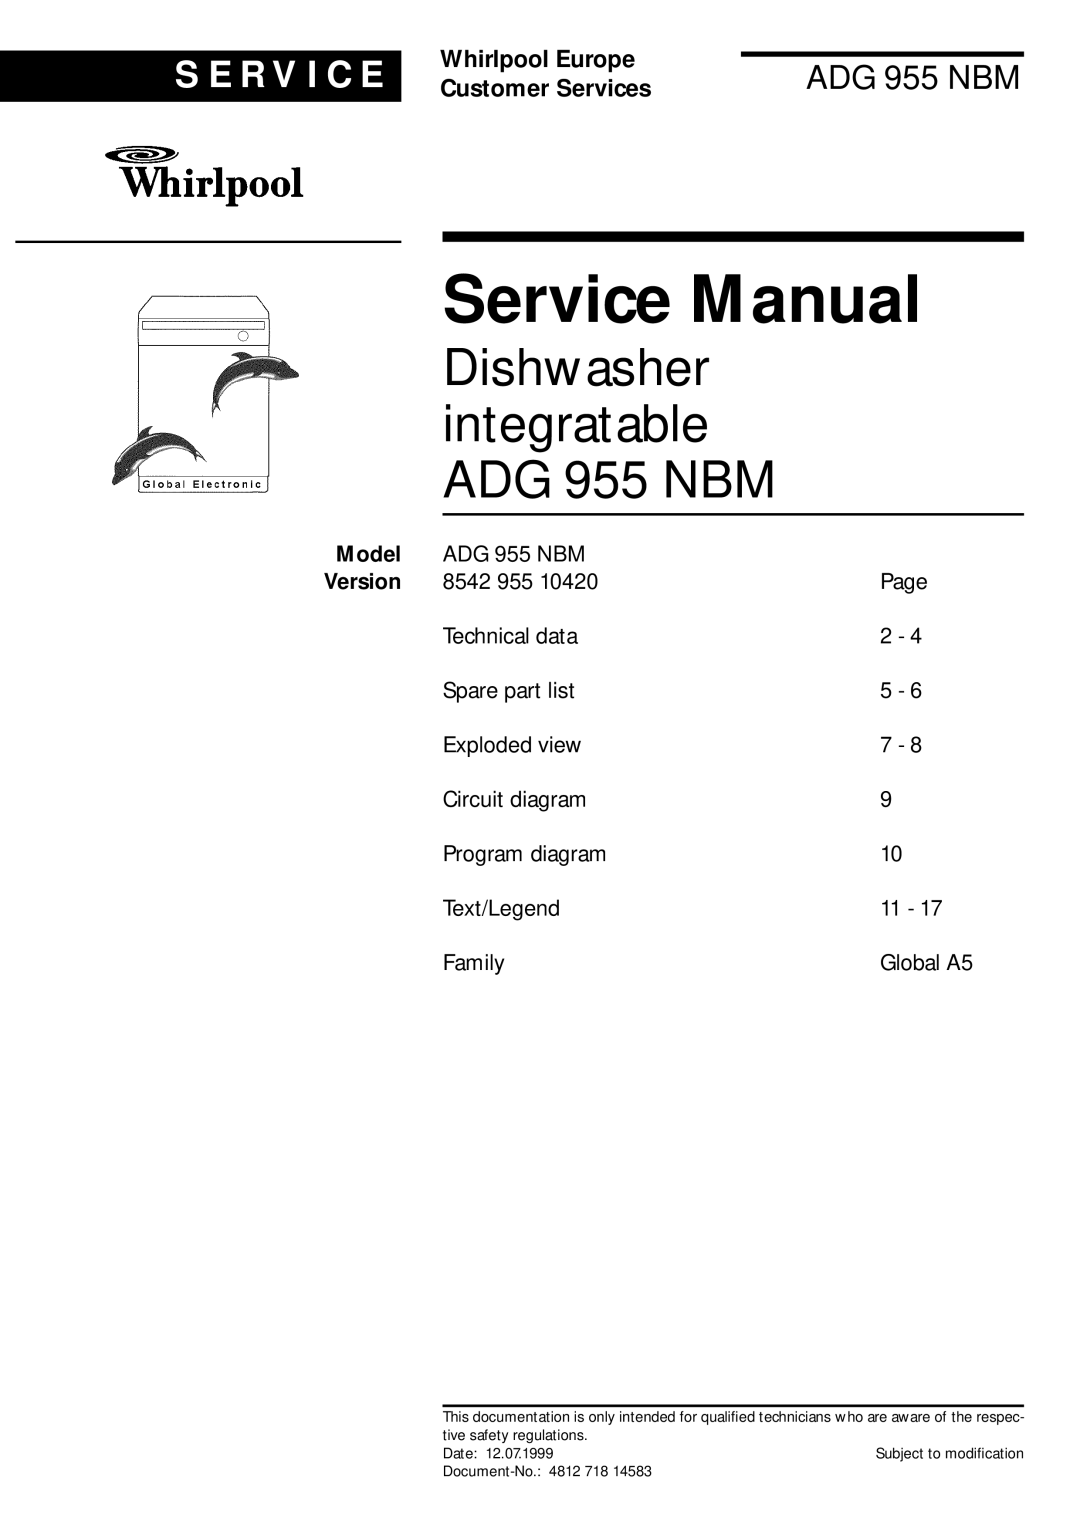 Whirlpool service manual Model, Service Manual, Dishwasher integratable ADG 955 NBM, S E R V I C E, Whirlpool Europe 